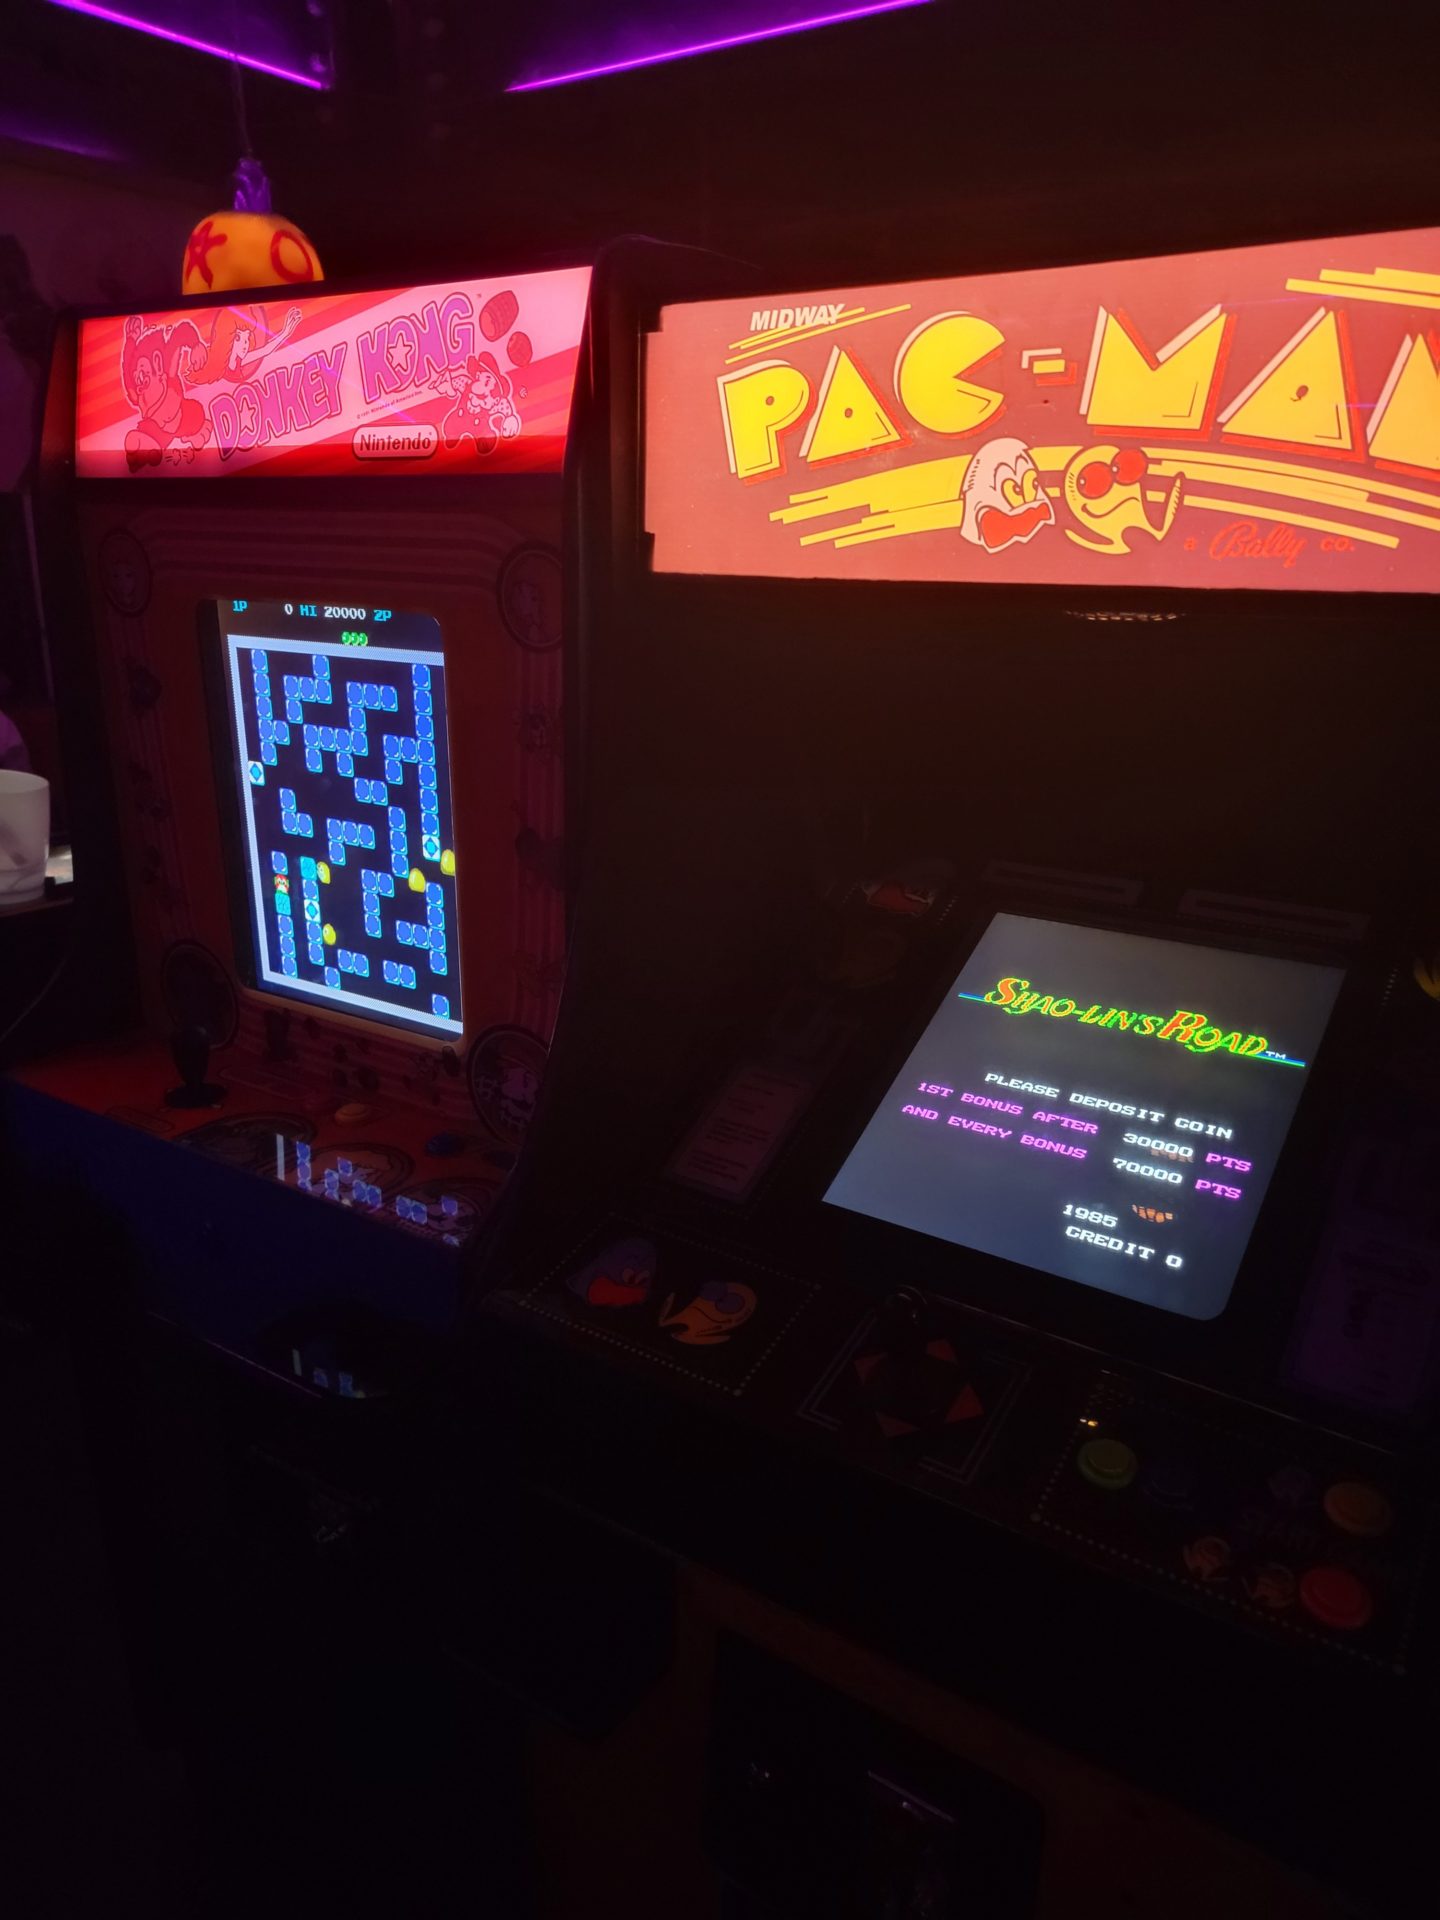 a game machines in a dark room